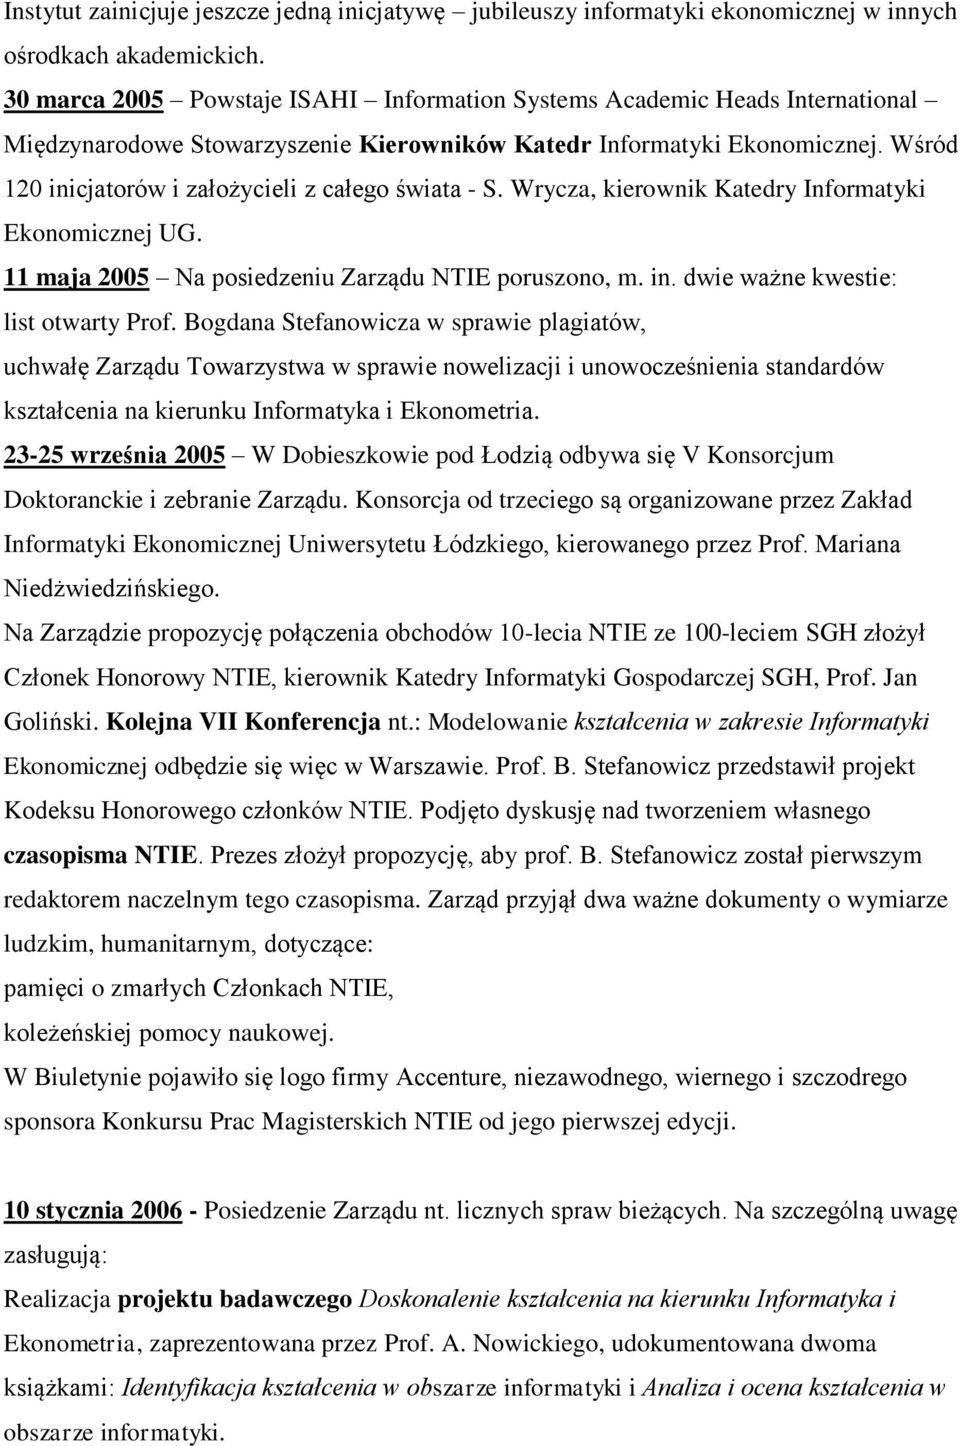 Wśród 120 inicjatorów i założycieli z całego świata - S. Wrycza, kierownik Katedry Informatyki Ekonomicznej UG. 11 maja 2005 Na posiedzeniu Zarządu NTIE poruszono, m. in. dwie ważne kwestie: list otwarty Prof.